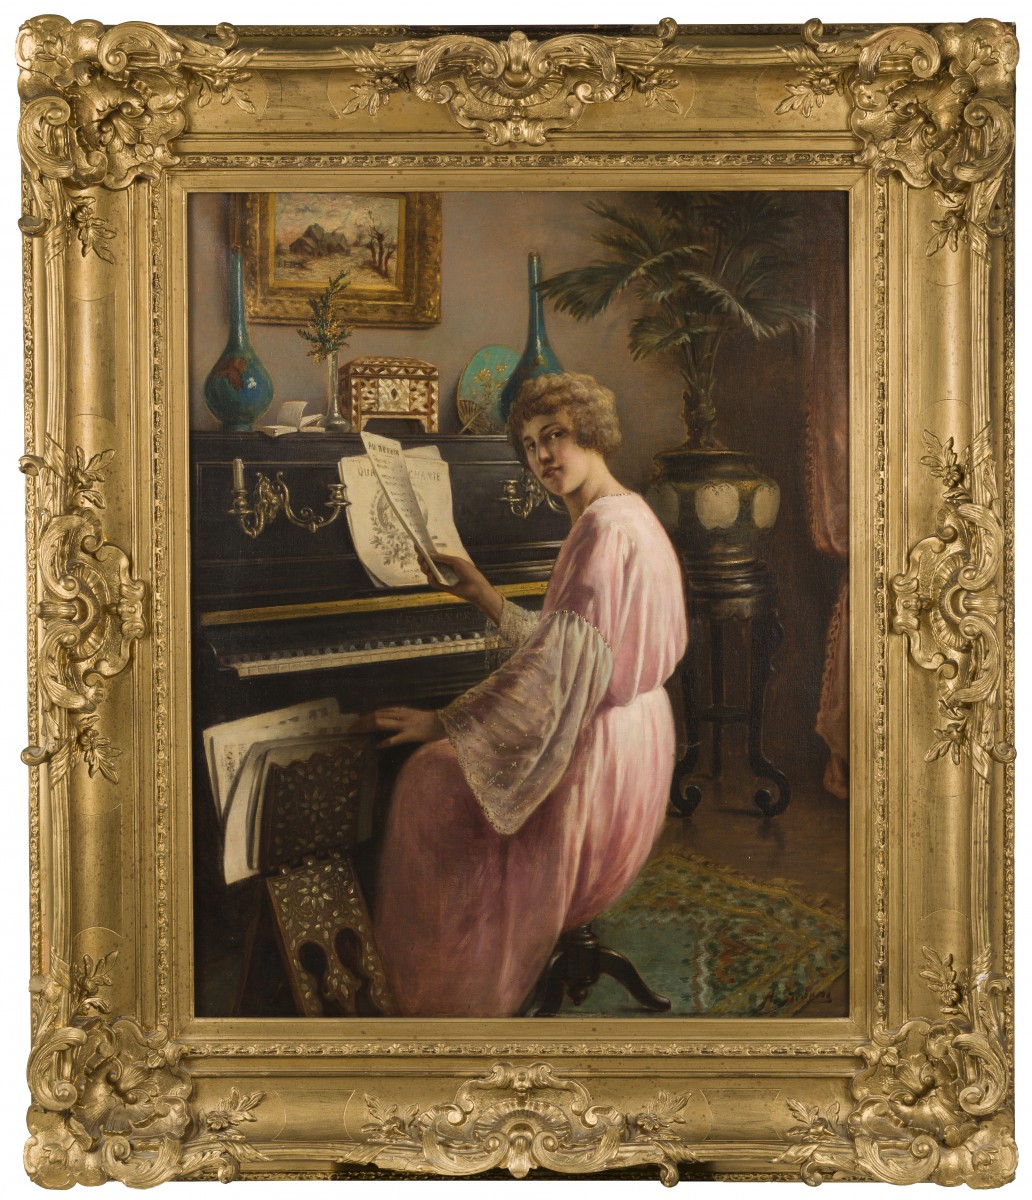 Agapit Stevens (Brussels, 1848 - Watermael-Boitsfort, 1924), Een jonge vrouw aan de piano.